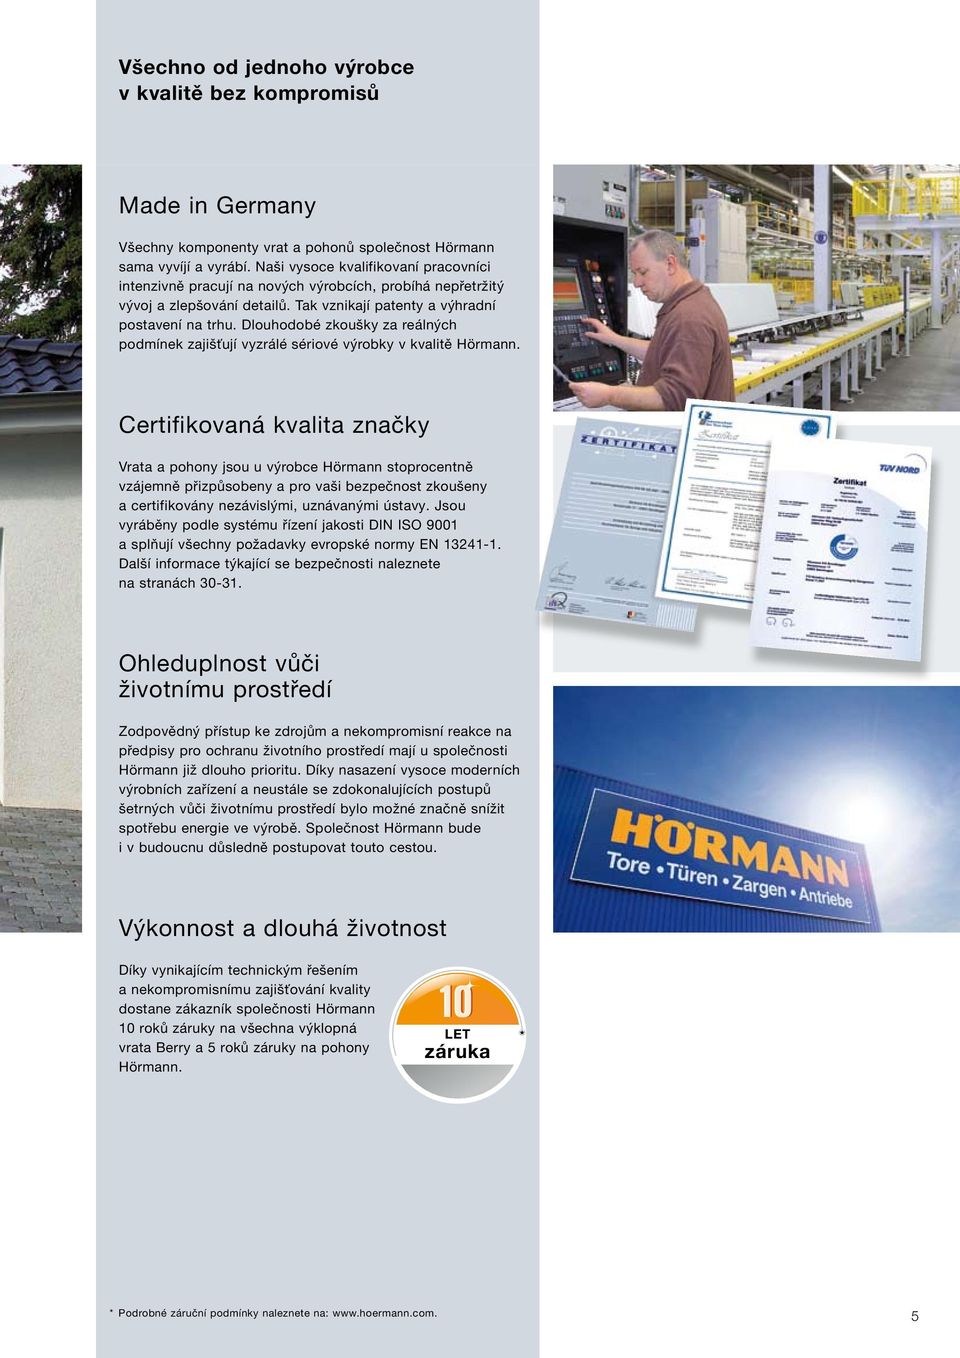 Dlouhodobé zkoušky za reálných podmínek zajišťují vyzrálé sériové výrobky v kvalitě Hörmann.